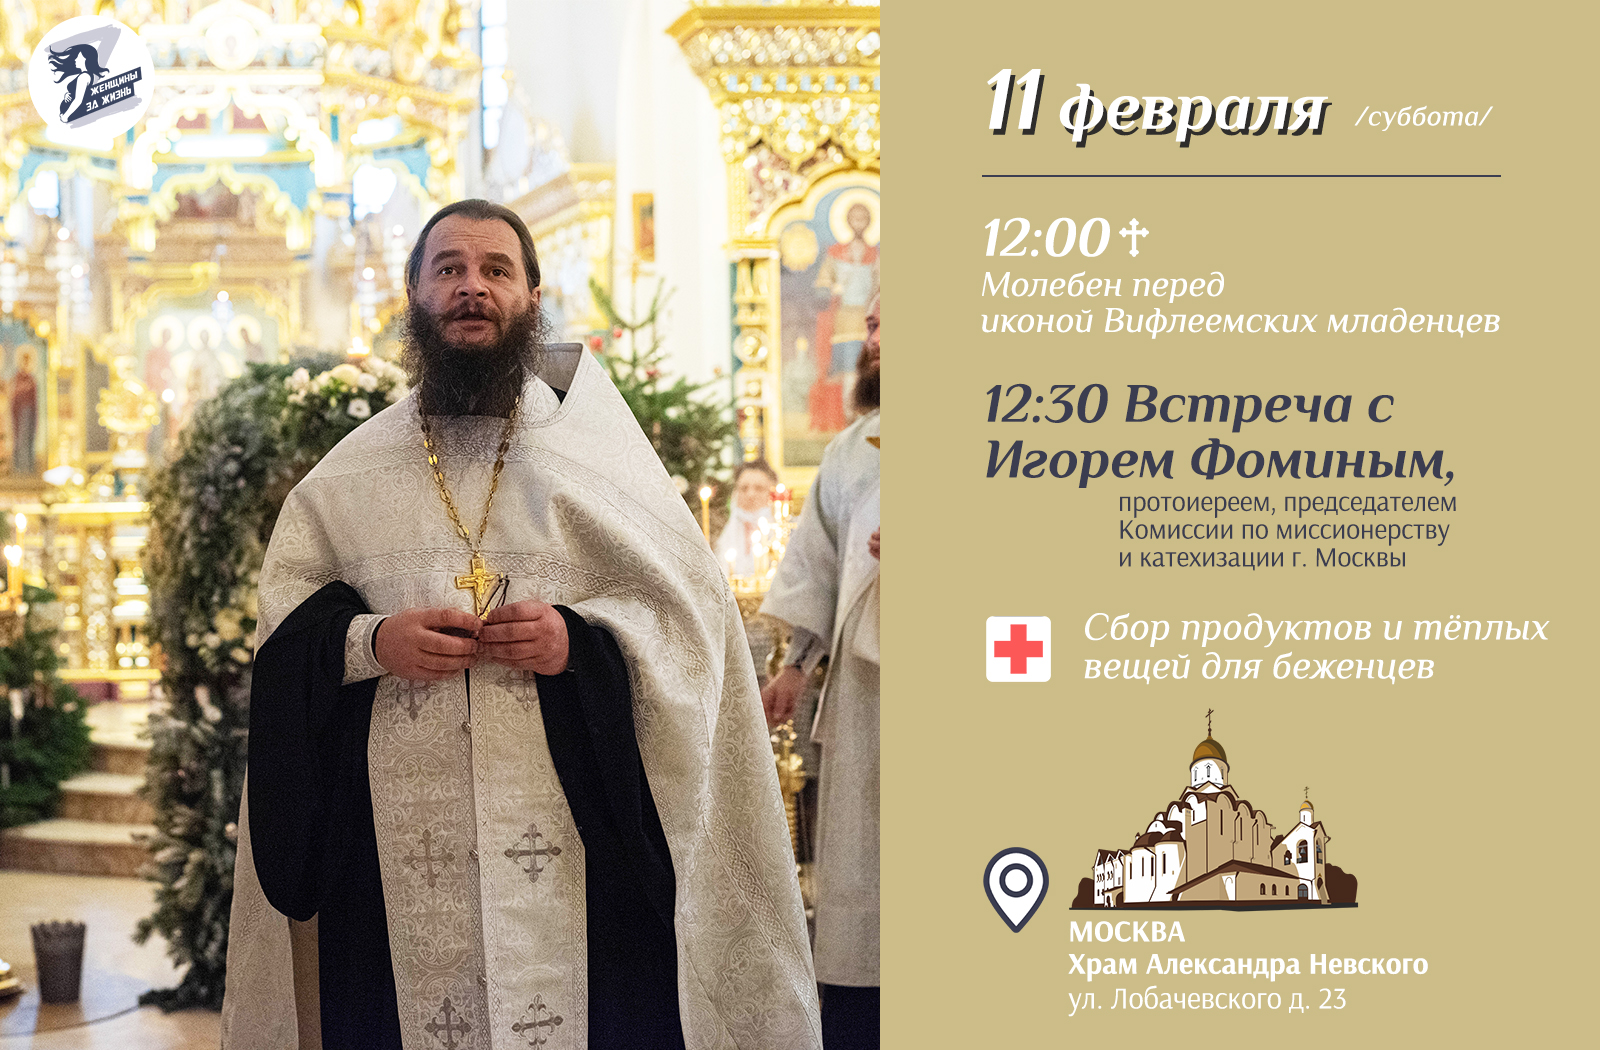 11 февраля в 12:00 состоится пятый противоабортный молебен в Храме Александра Невского.